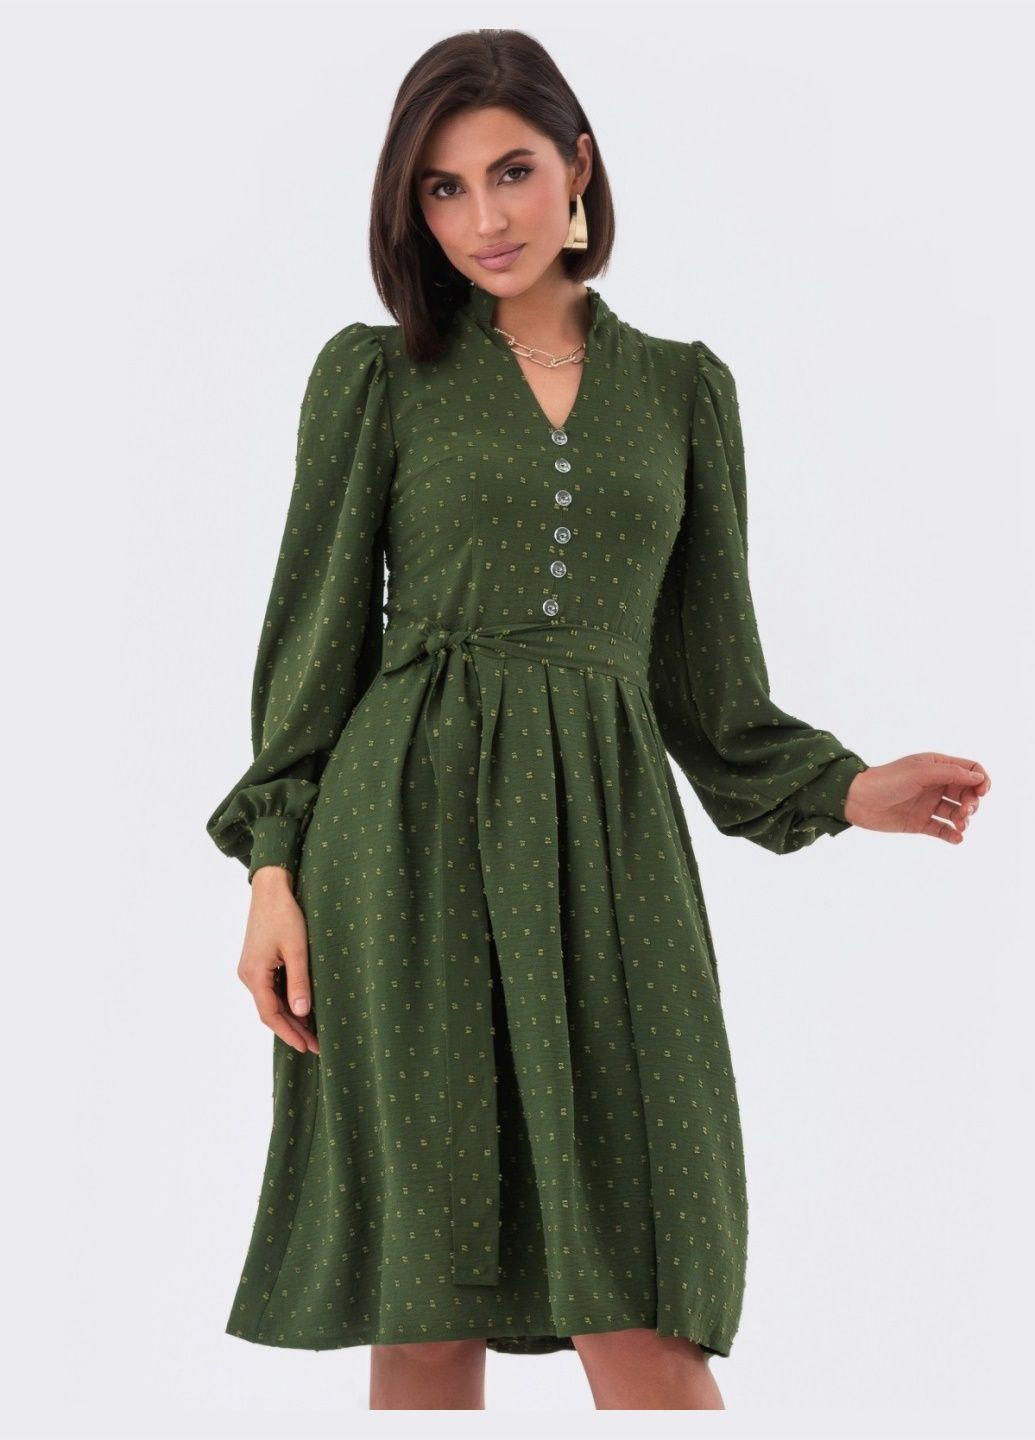 Оливковое (хаки) платье-клёш цвета хаки с декоративными пуговицами Dressa